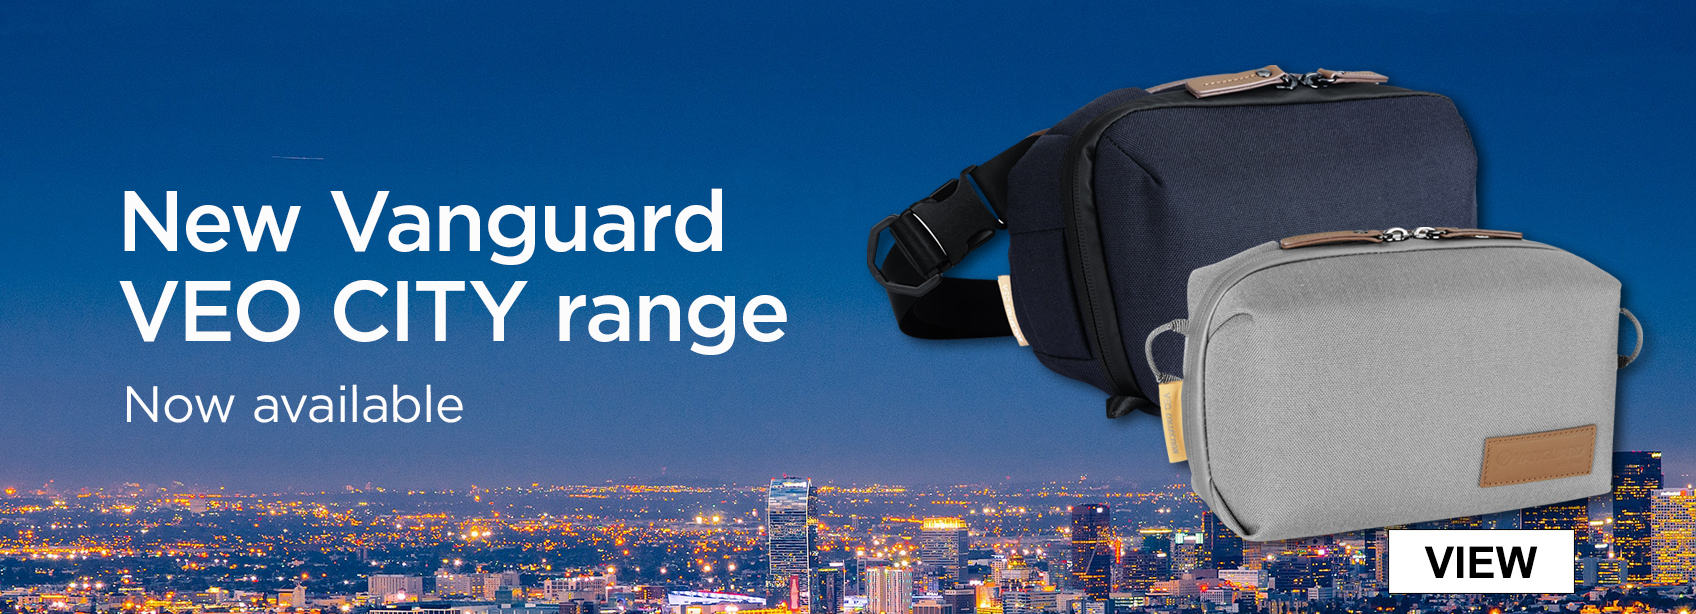 New Vanguard VEO CITY range - Now available